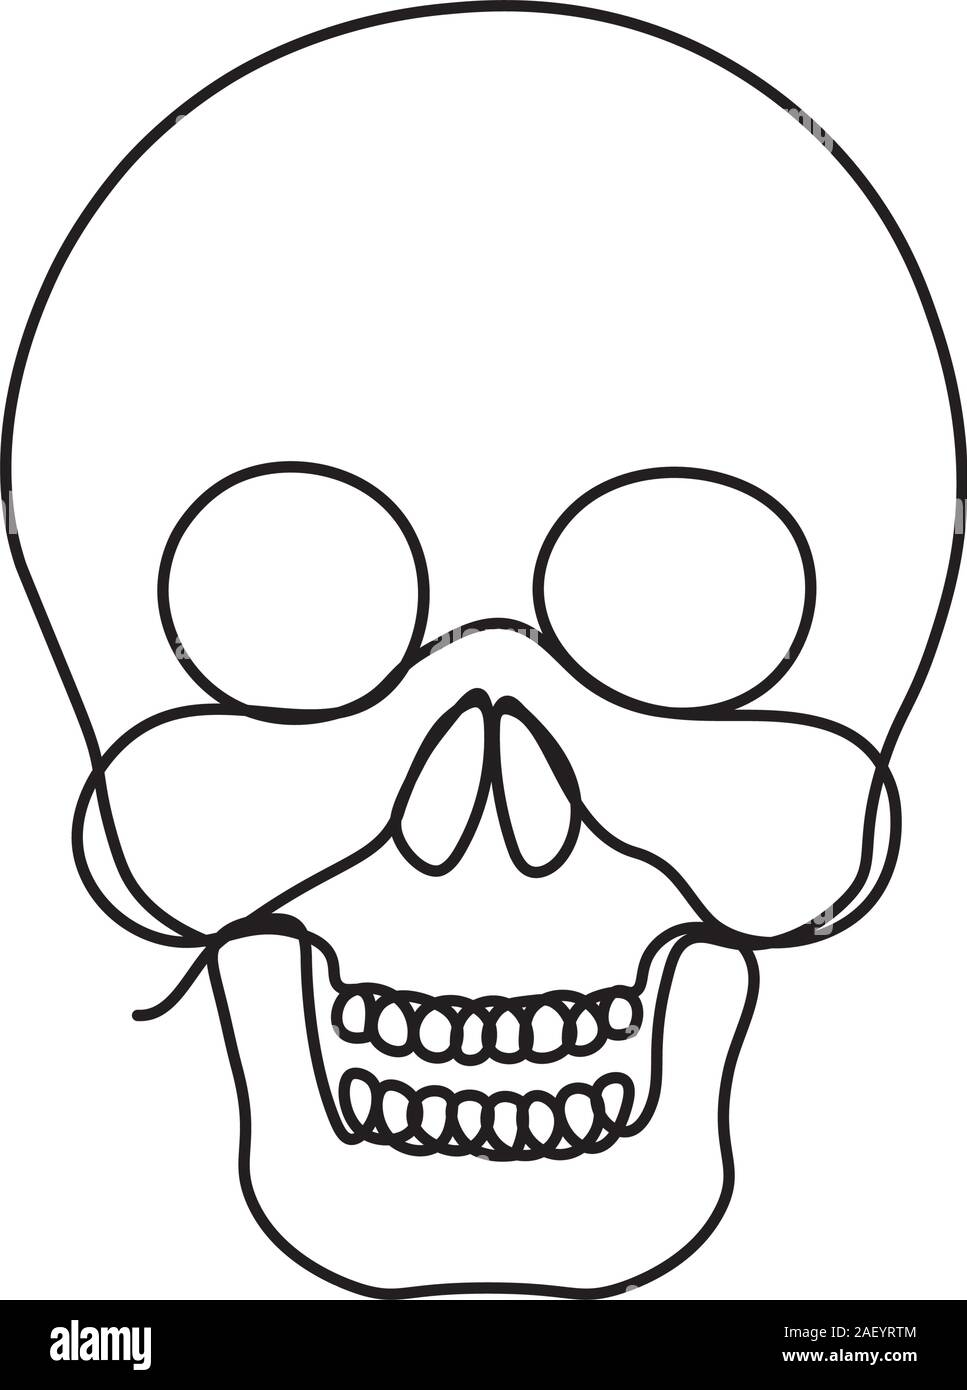 Crâne humain unique style de ligne continue Illustration de Vecteur